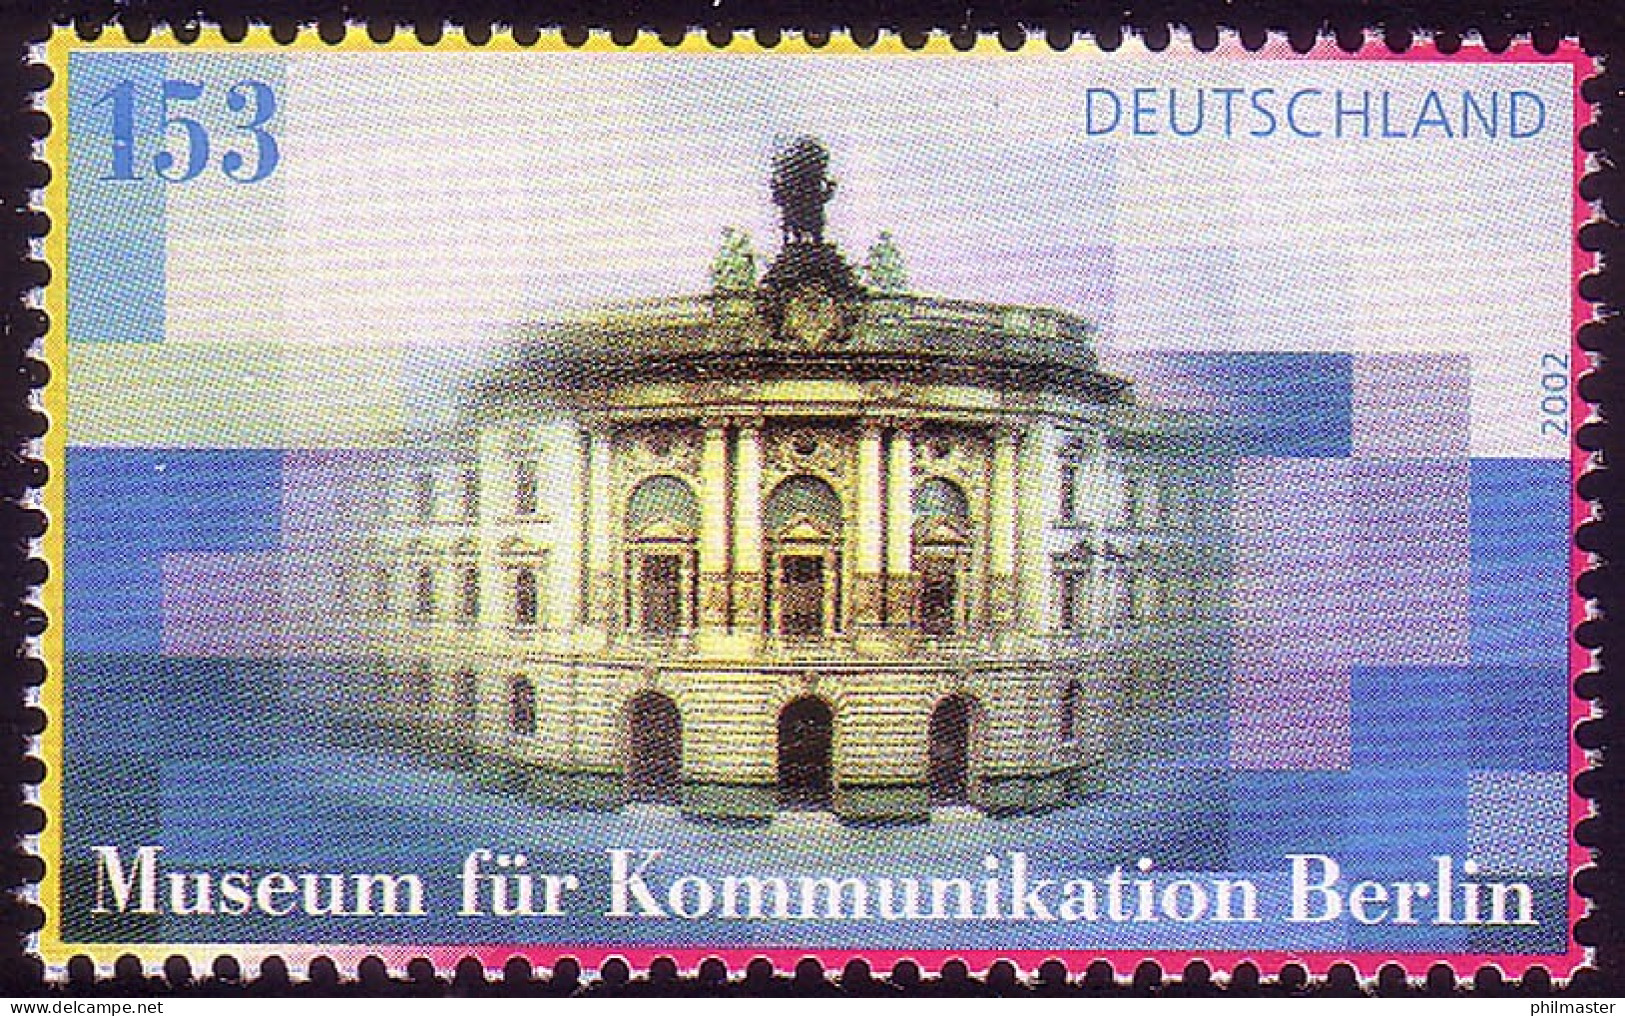 2276 Museum Für Kommunikation Berlin - 10 Einzelmarken, Alle ** / MNH - Nuovi